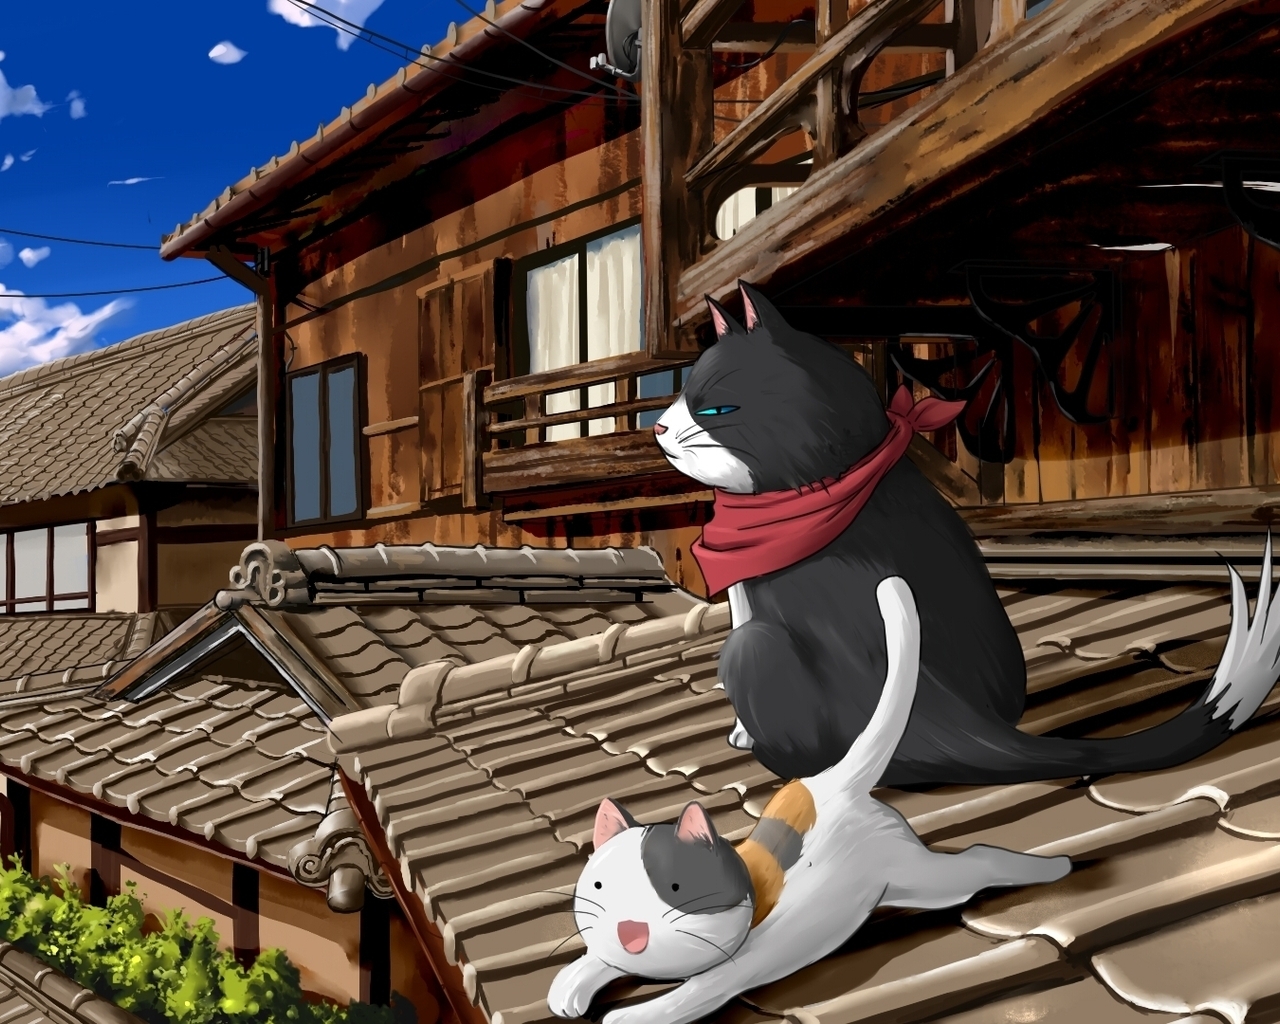 Nyan Koi Anime Series for 1280 x 1024 resolution